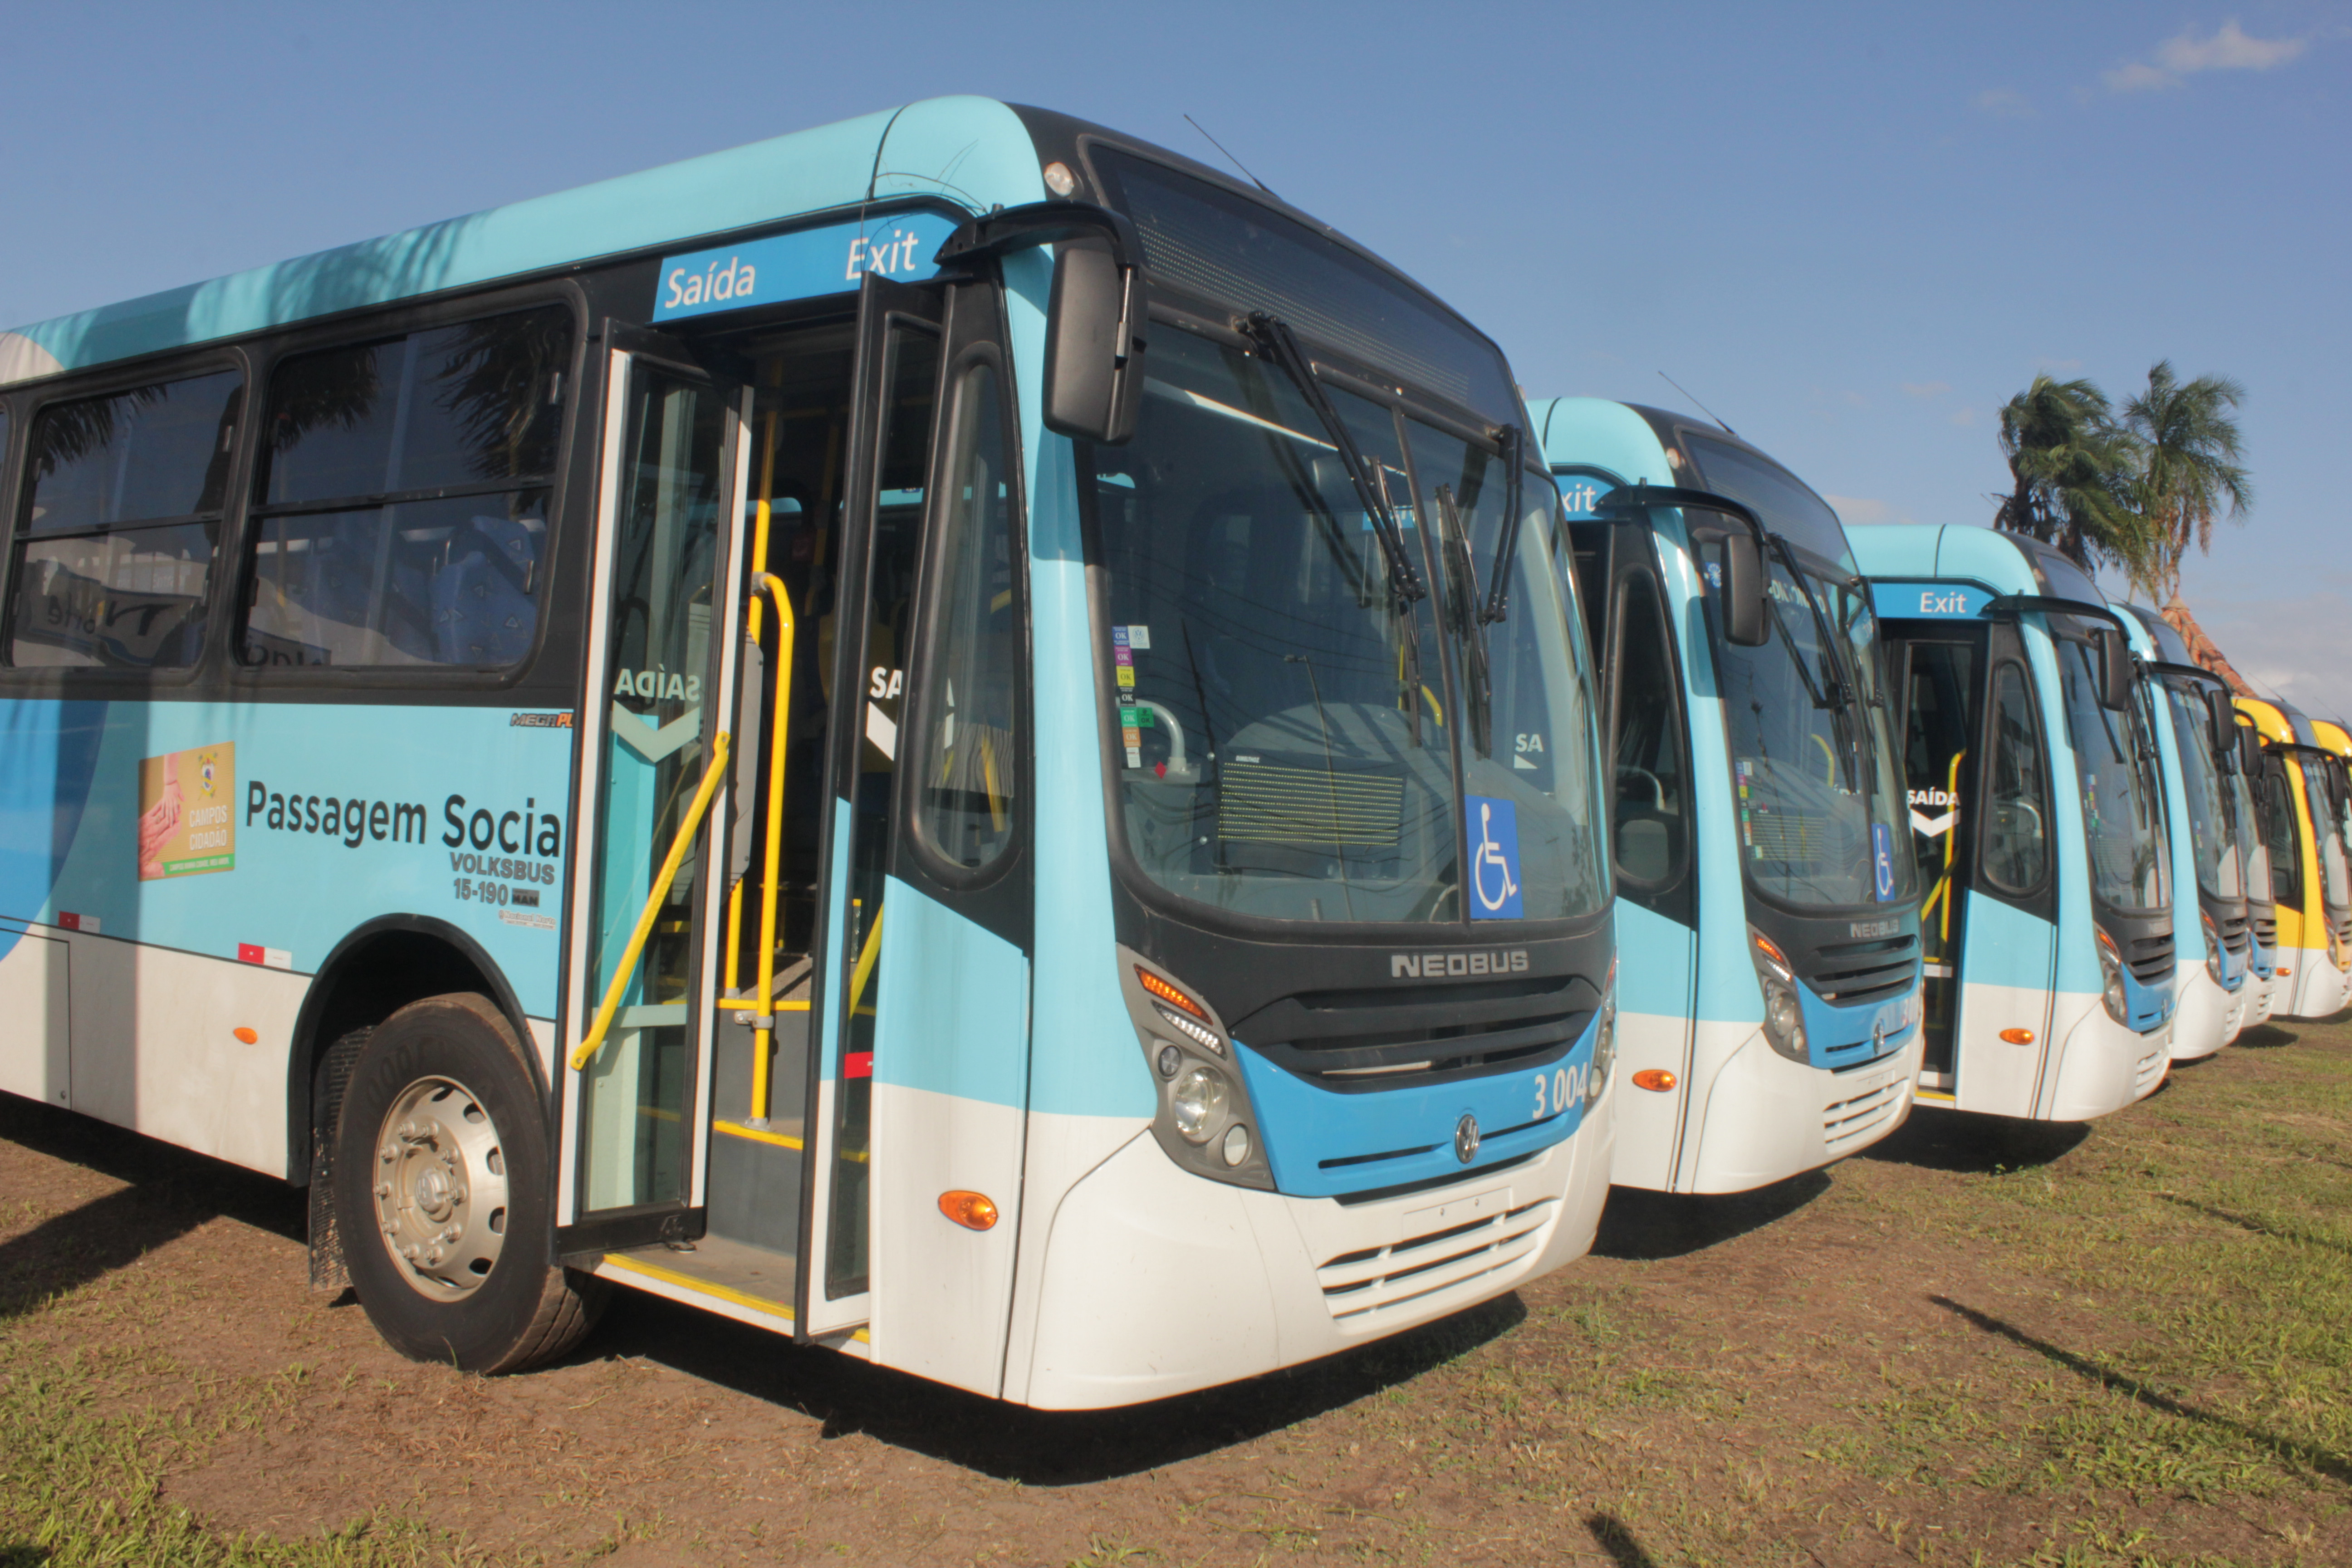 O novo sistema do transporte público que está sendo implementado em Campos tem como ponto de partida os novos e modernos ônibus, com novo layout, nas cores predominantes amarela, verde e azul (Foto: Superintendência de Comunicação)